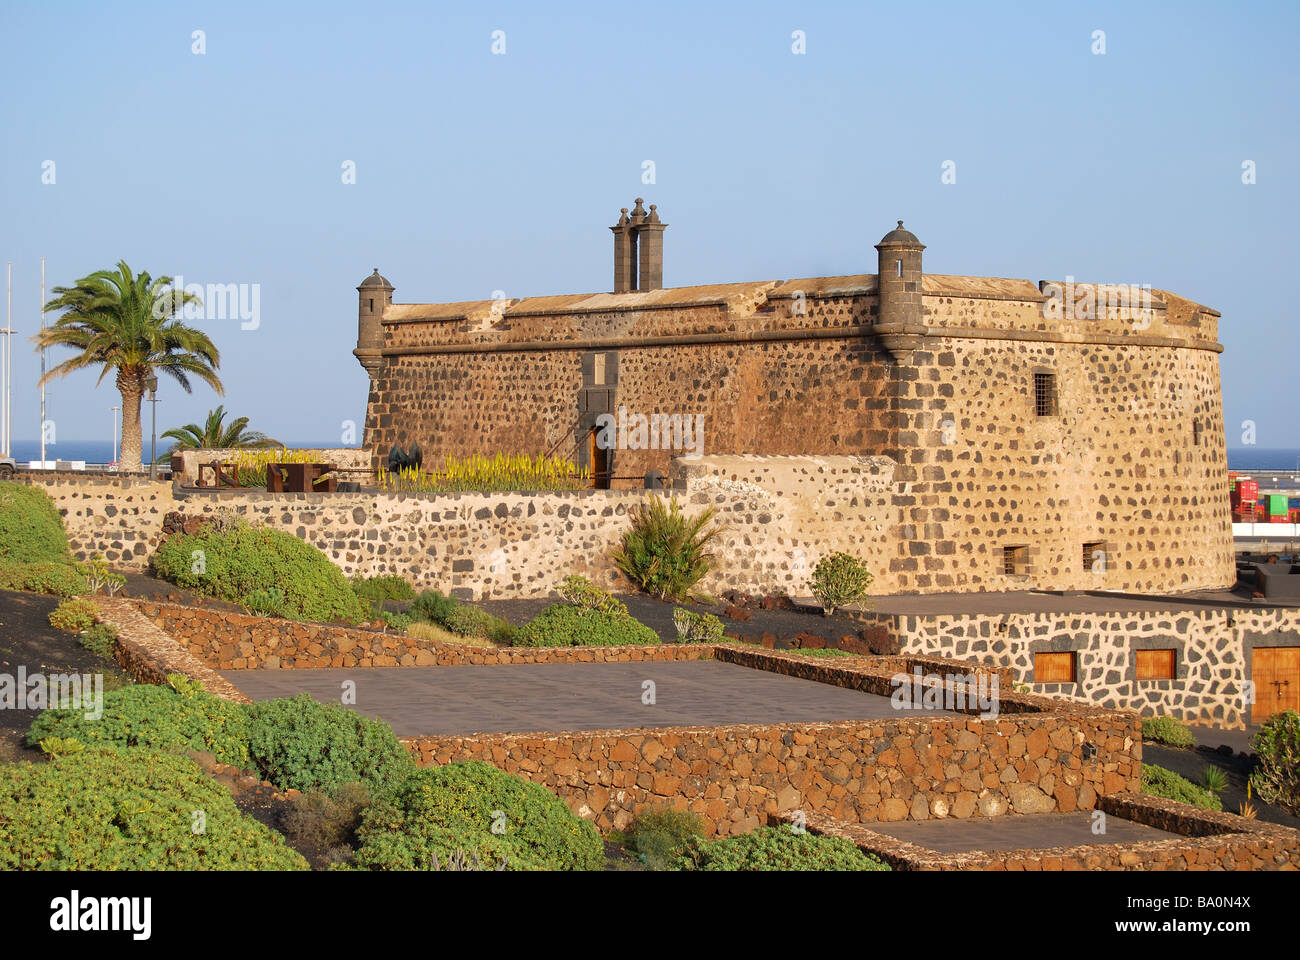 Castillo de San Jose, Arrecife, Lanzarote, Canary Islands, Spain Stock Photo